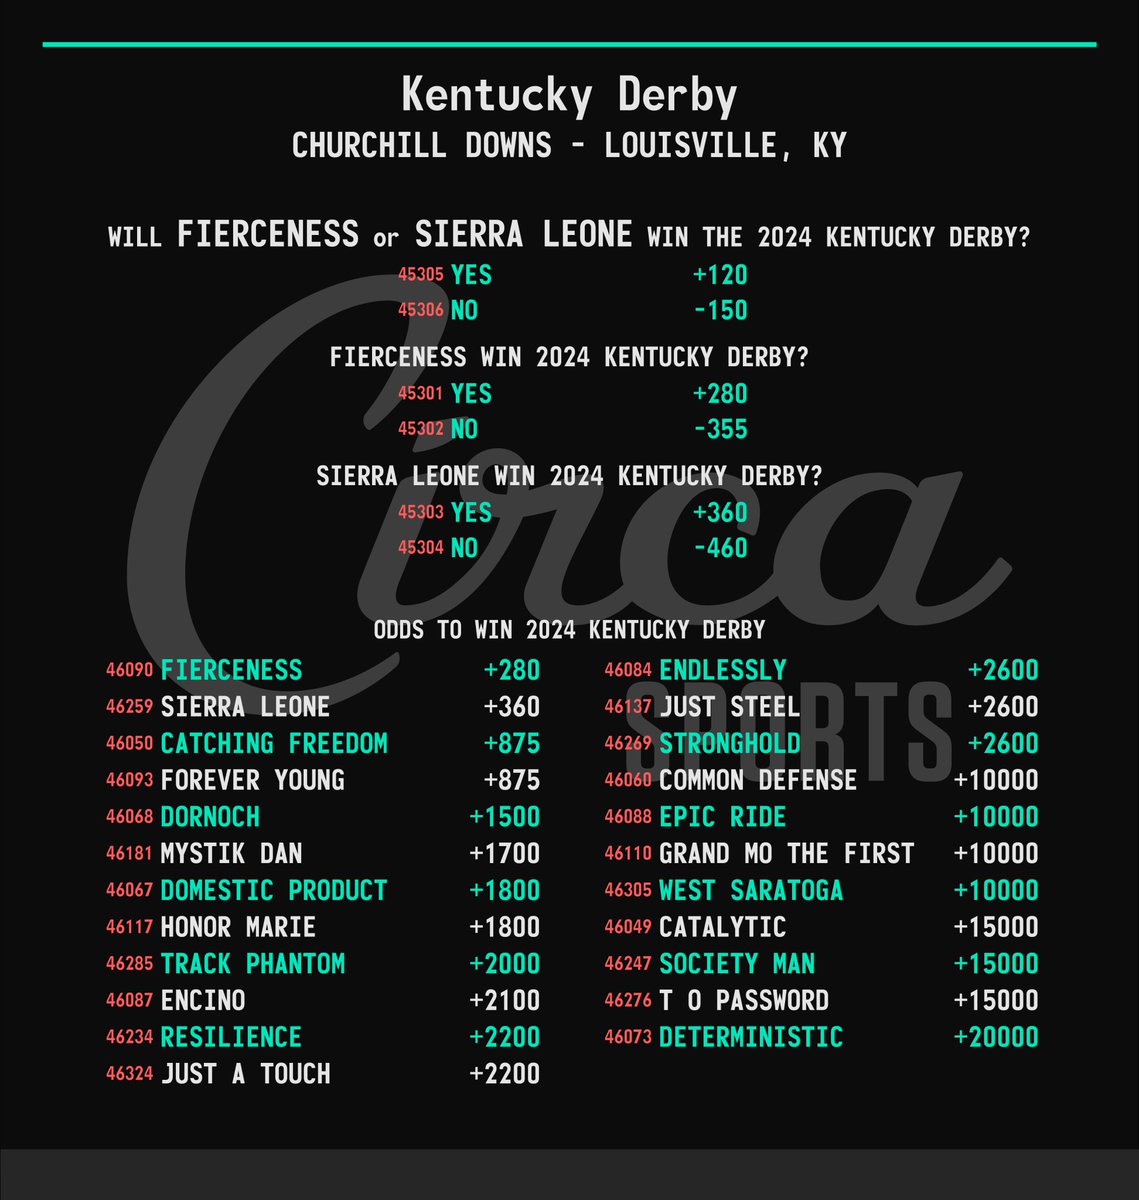 Kentucky Derby 🏇🏆 Odds To Win & Fierceness/Sierra Leone Yes/No #KyDerby | #KentuckyDerby 🌹🏇